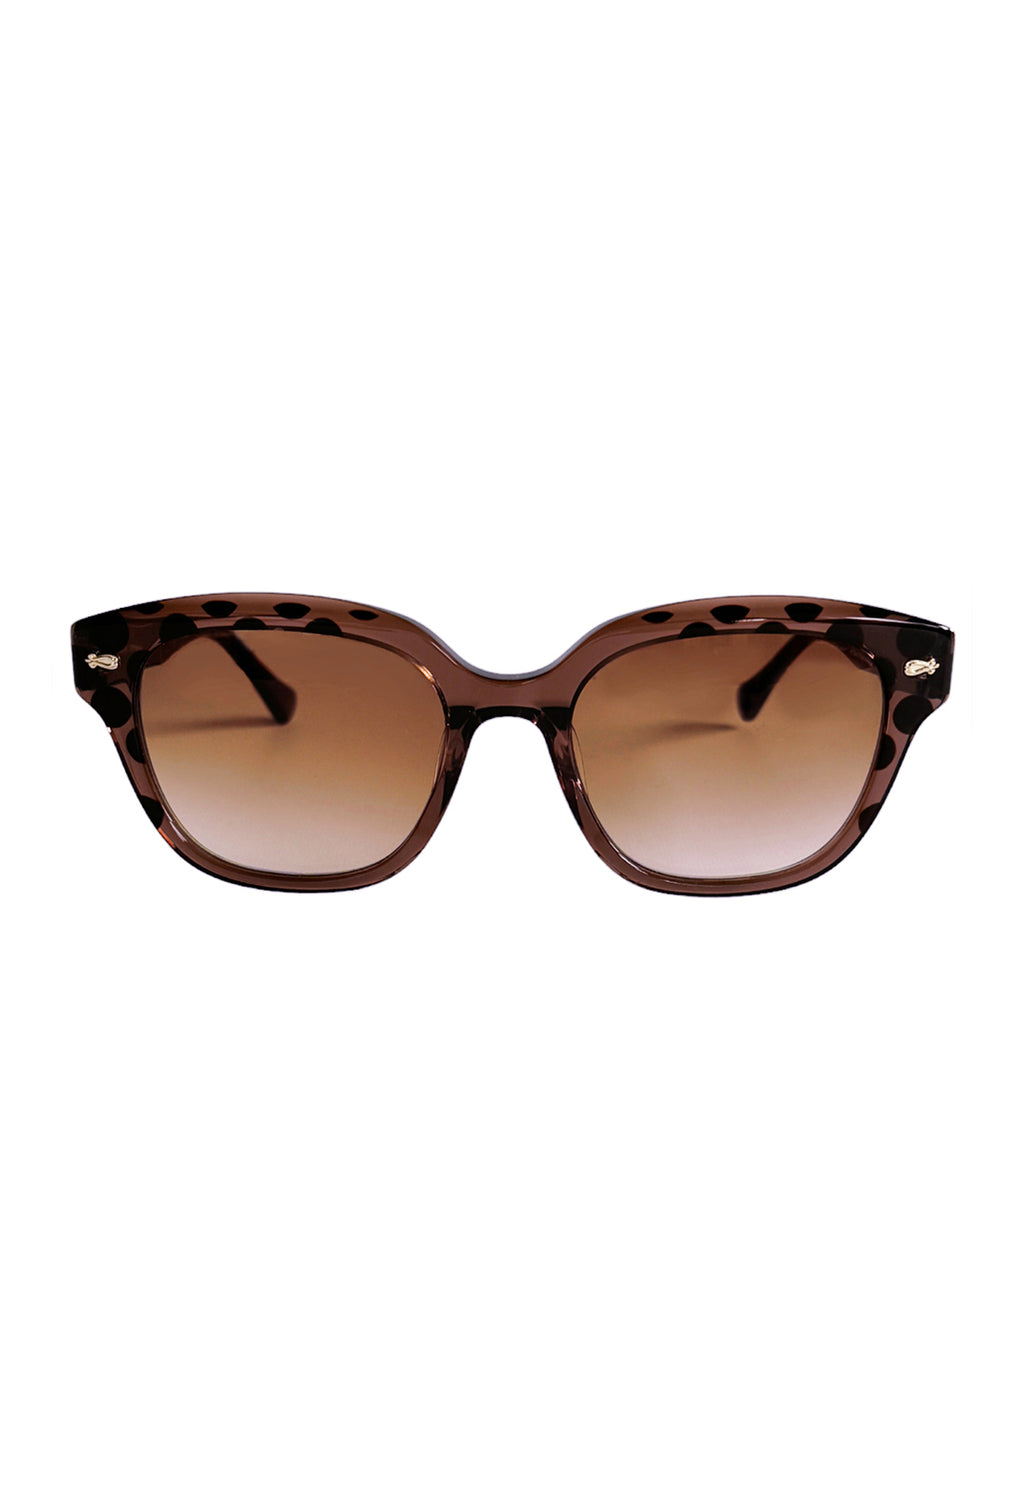 ✨売り切れ✨ありがとうございました♥アナスイ素敵なサングラス 